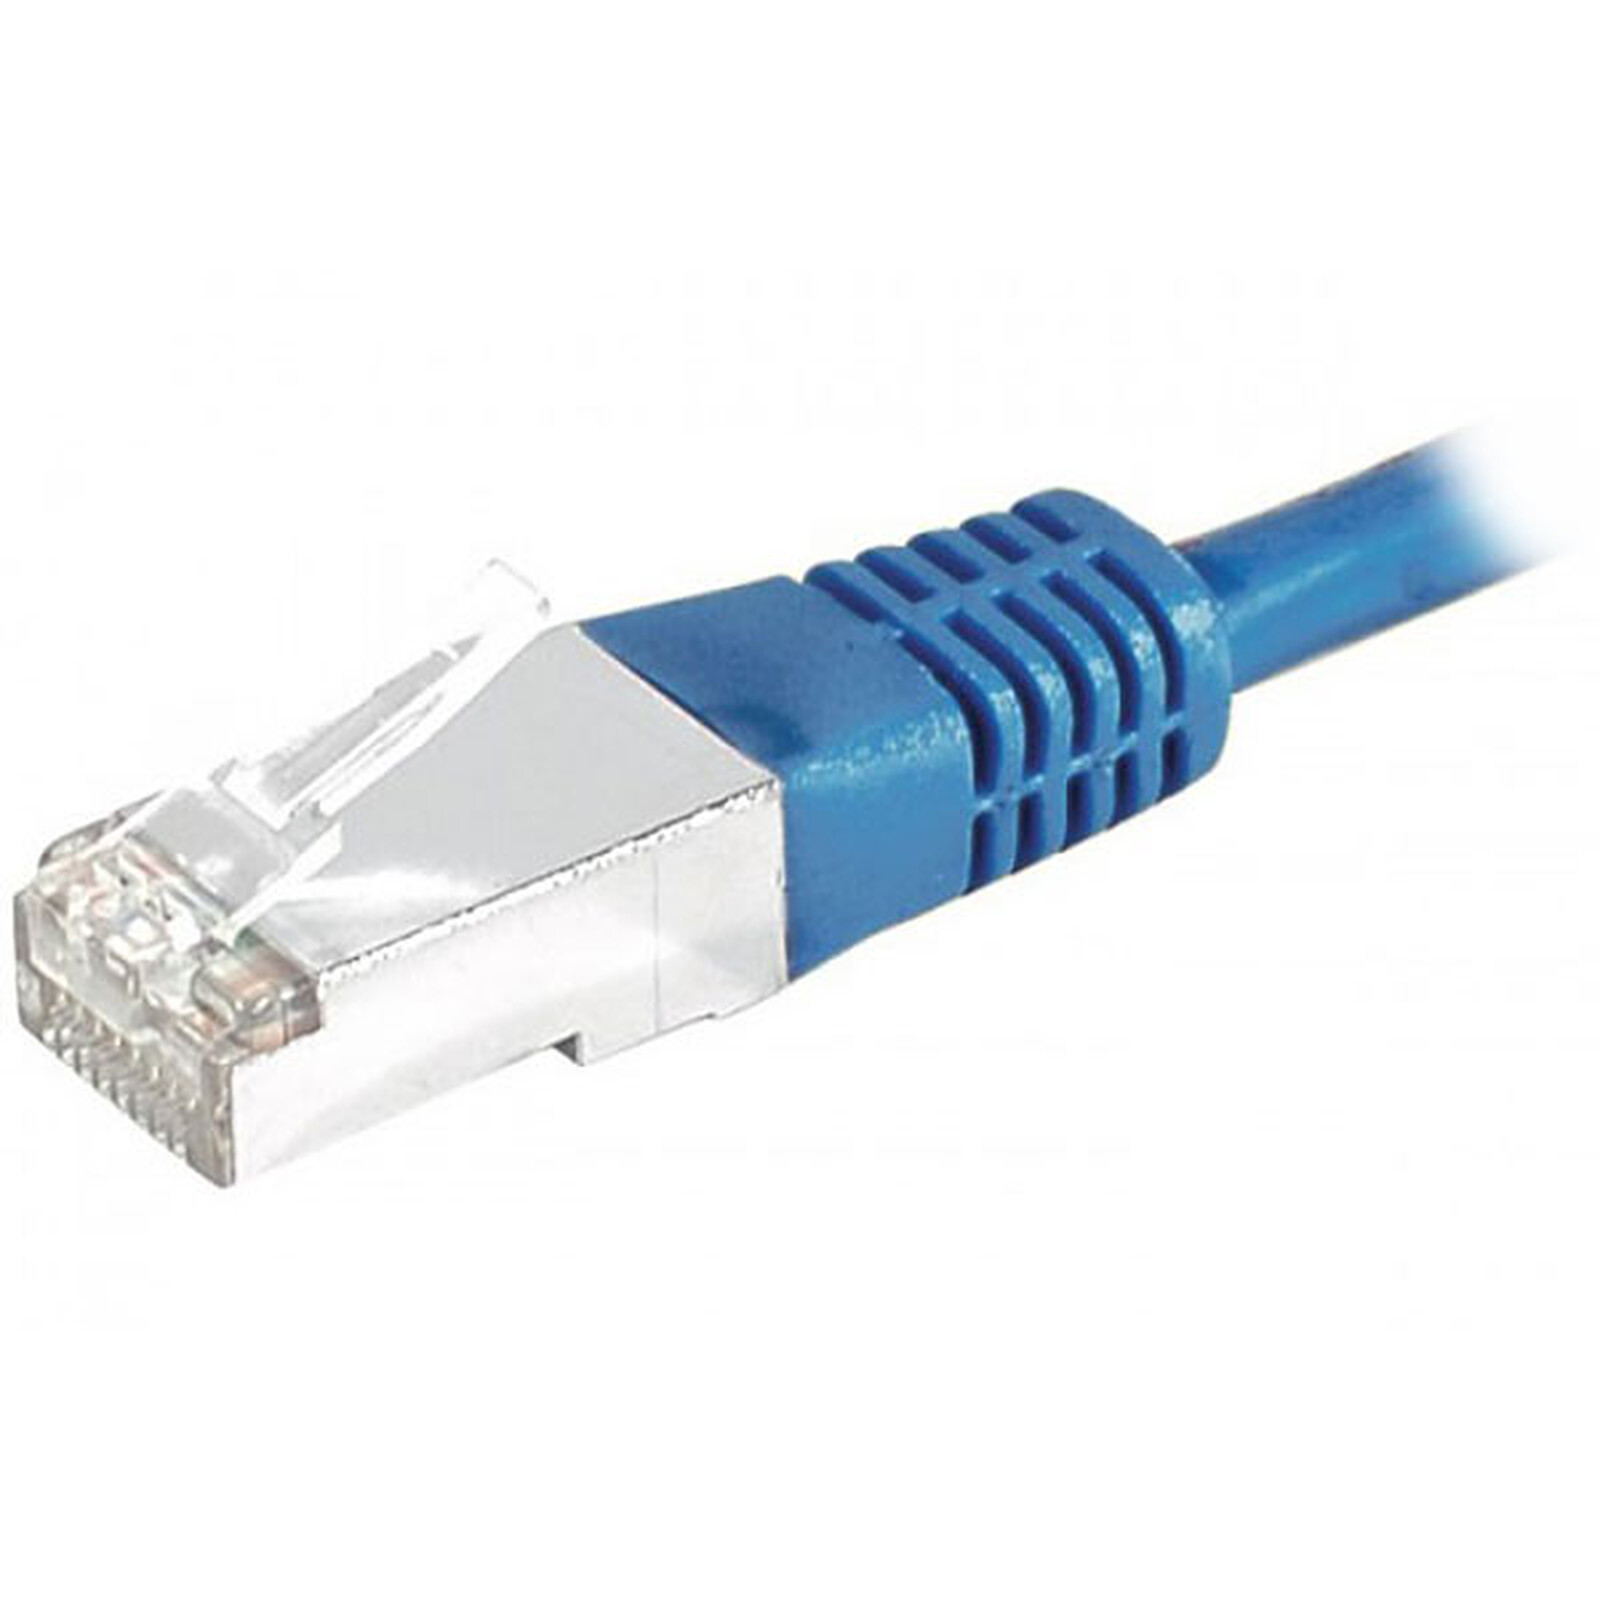 Câble Ethernet 10m Cat 6, Cable RJ45 10m Câble Réseau, Cable